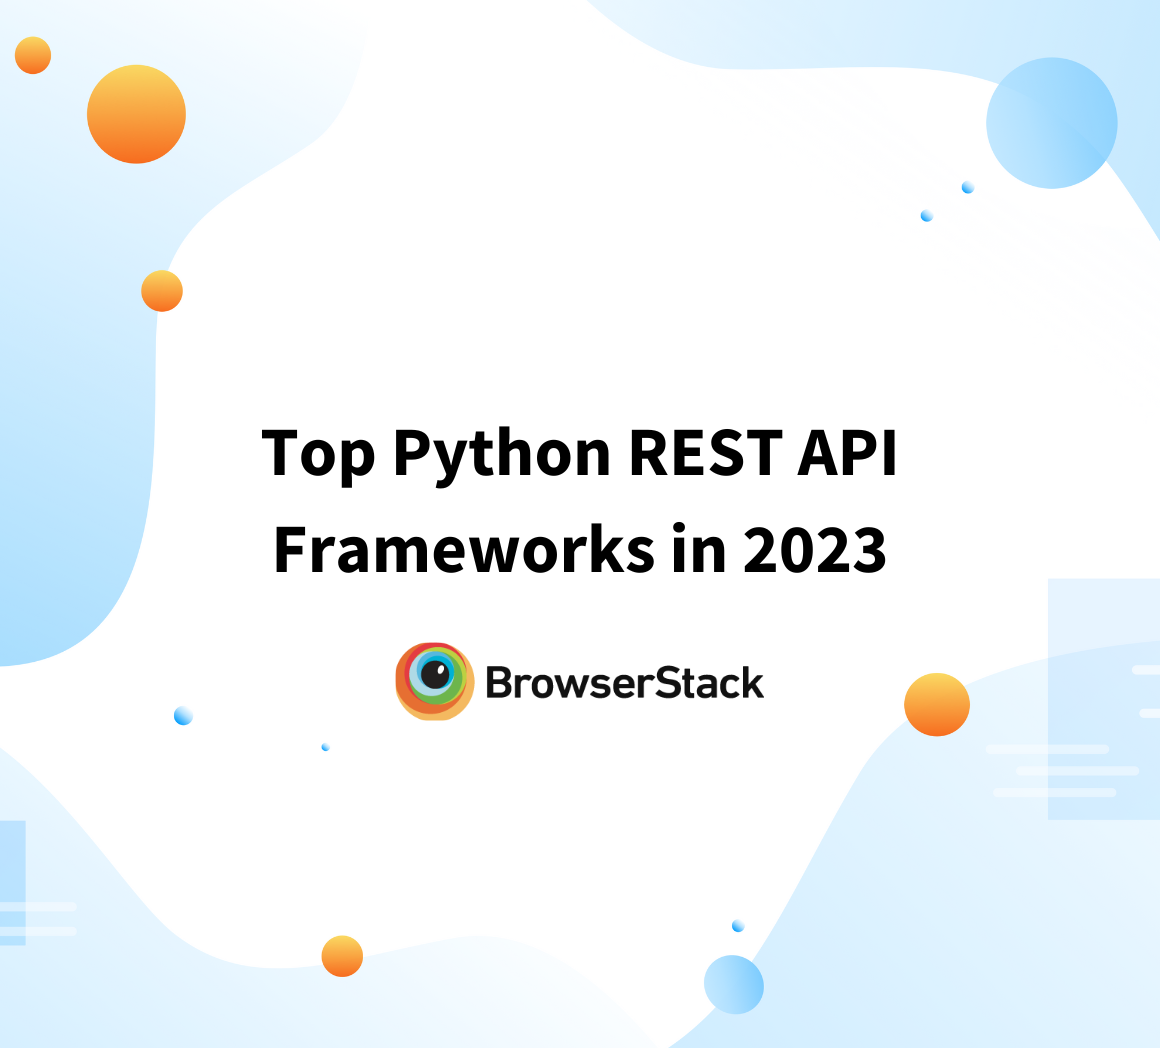 Top Python REST API Frameworks in 2023